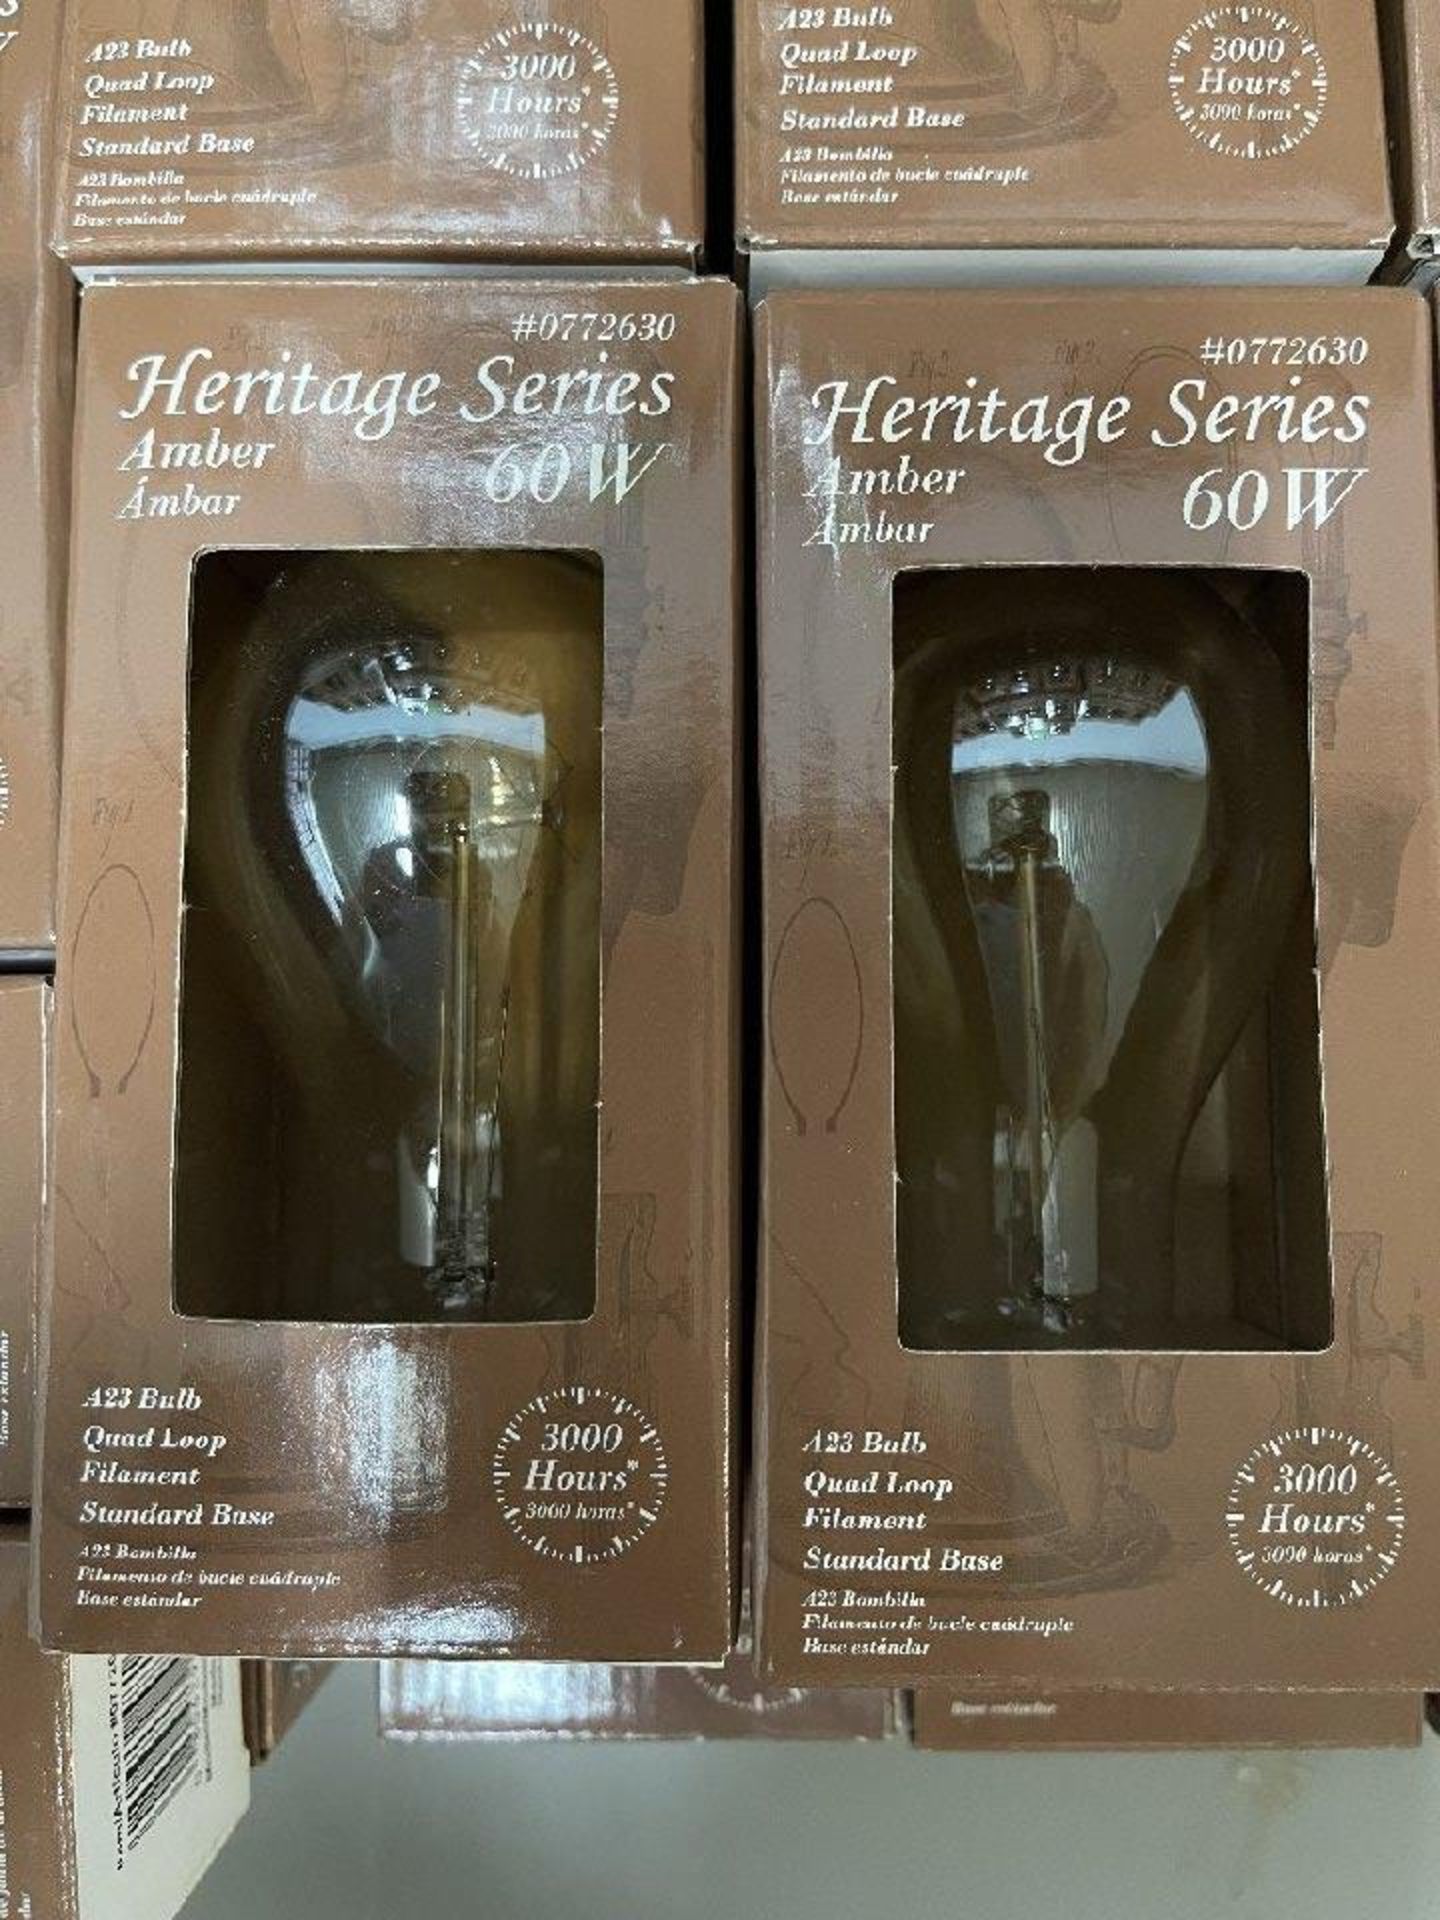 Heritage Series Light Bulbs - Image 3 of 3